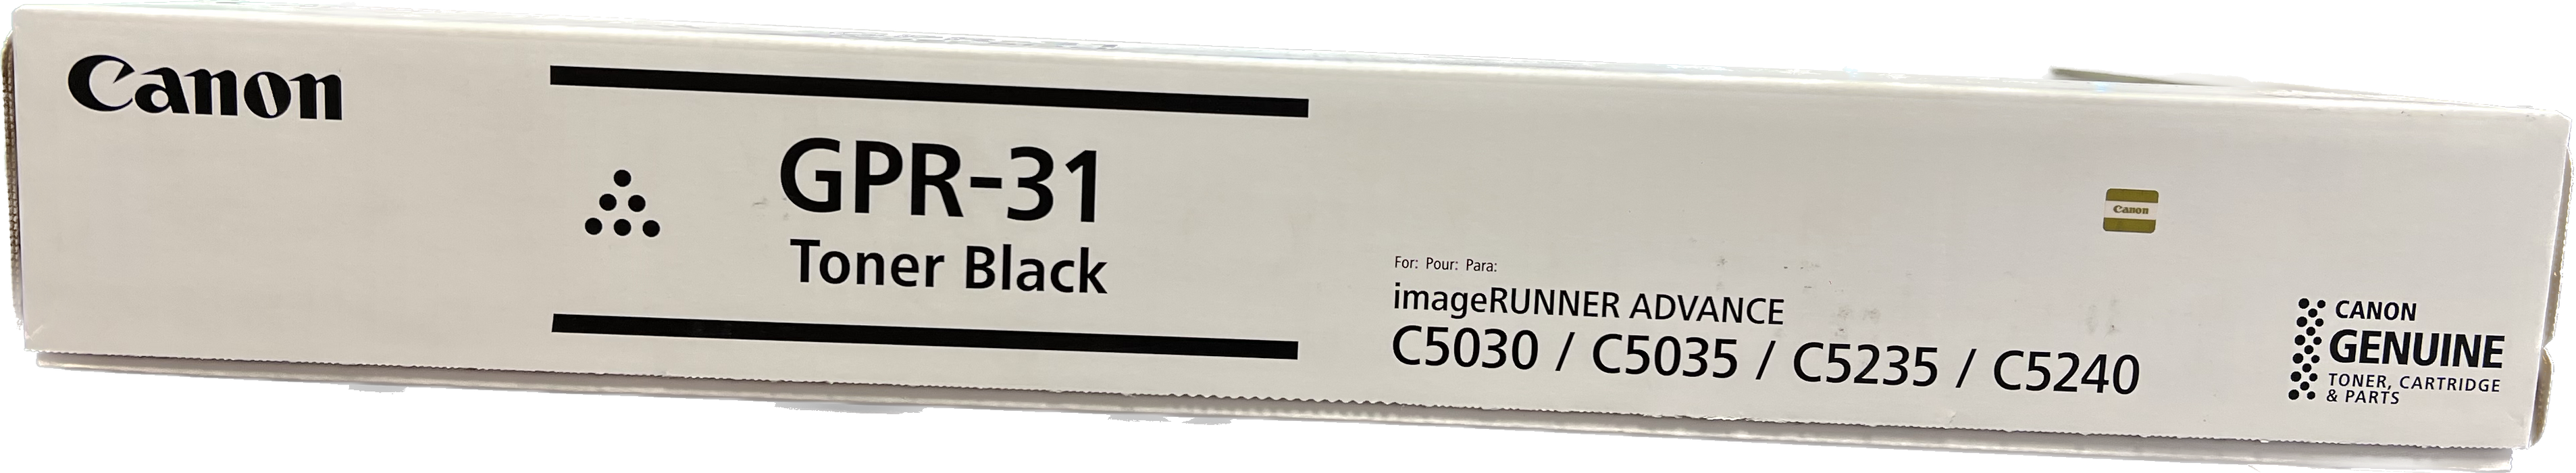 Genuine Canon Black Toner Cartridge | 2790B003 | GPR-31K